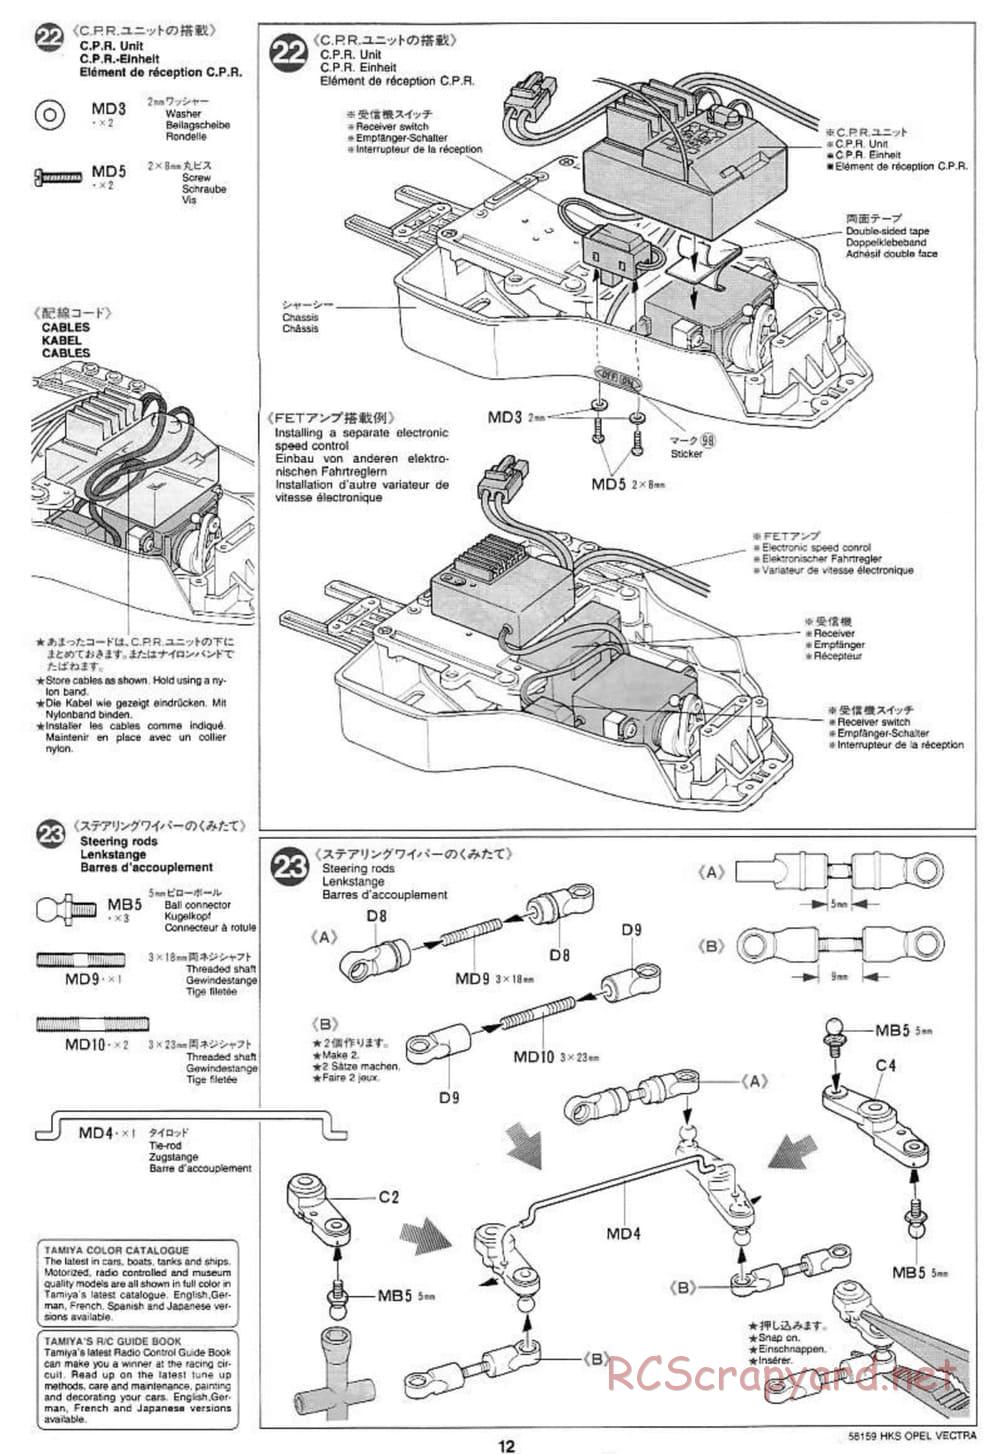 Tamiya - HKS Opel Vectra JTCC - FF-01 Chassis - Manual - Page 12